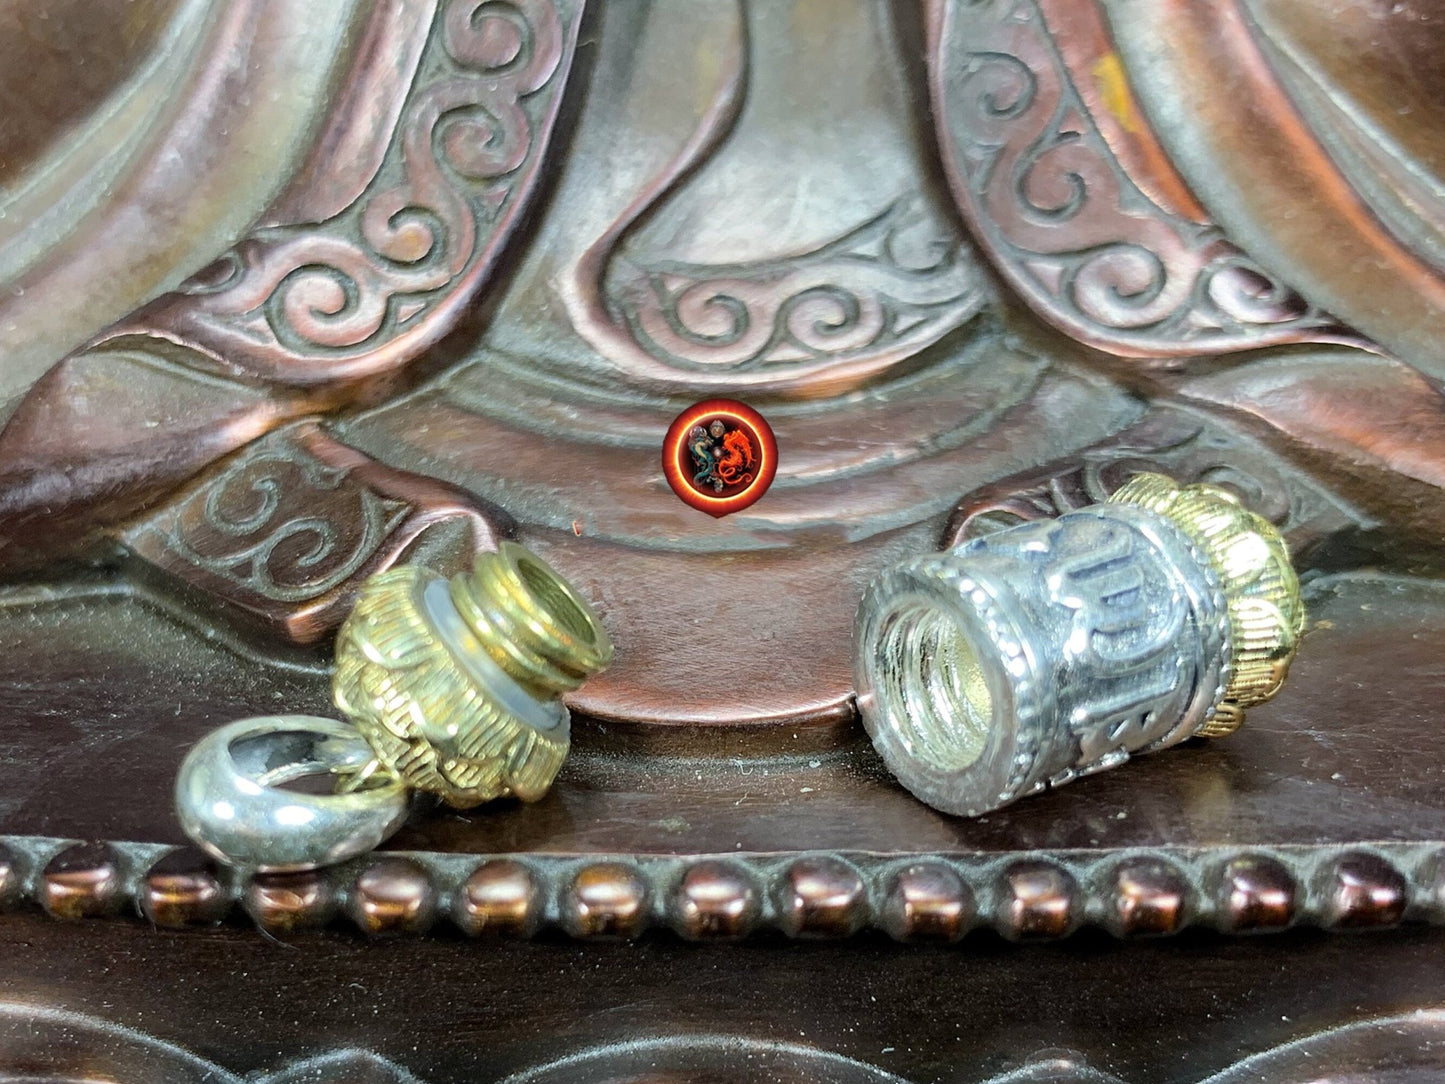 Pendentif bouddha Reliquaire bouddhiste tibetain. Moulin a prière ouvrant. Mantra de la compassion "om mani padme hum". Argent 925 poinçonné, cuivre - obsidian dragon